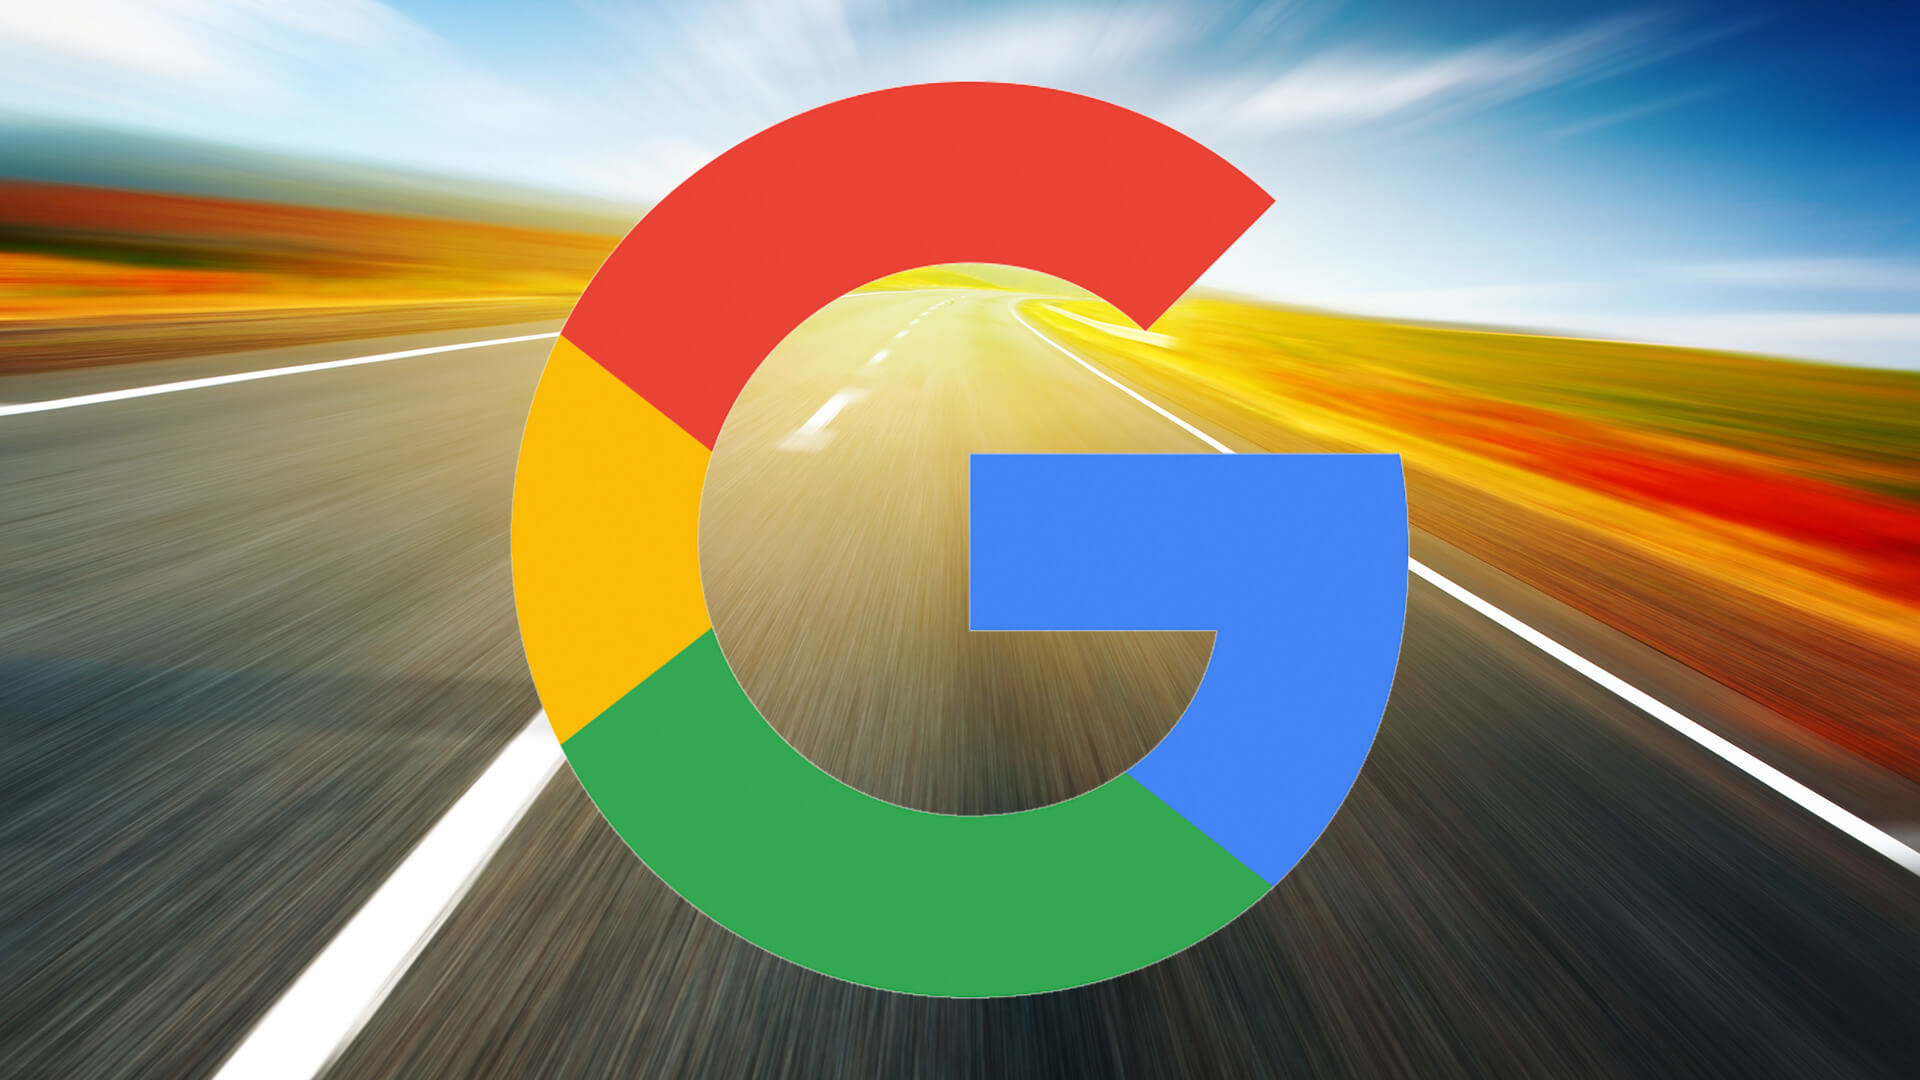 Google正在采取行动应对亚马逊广告业务的增长